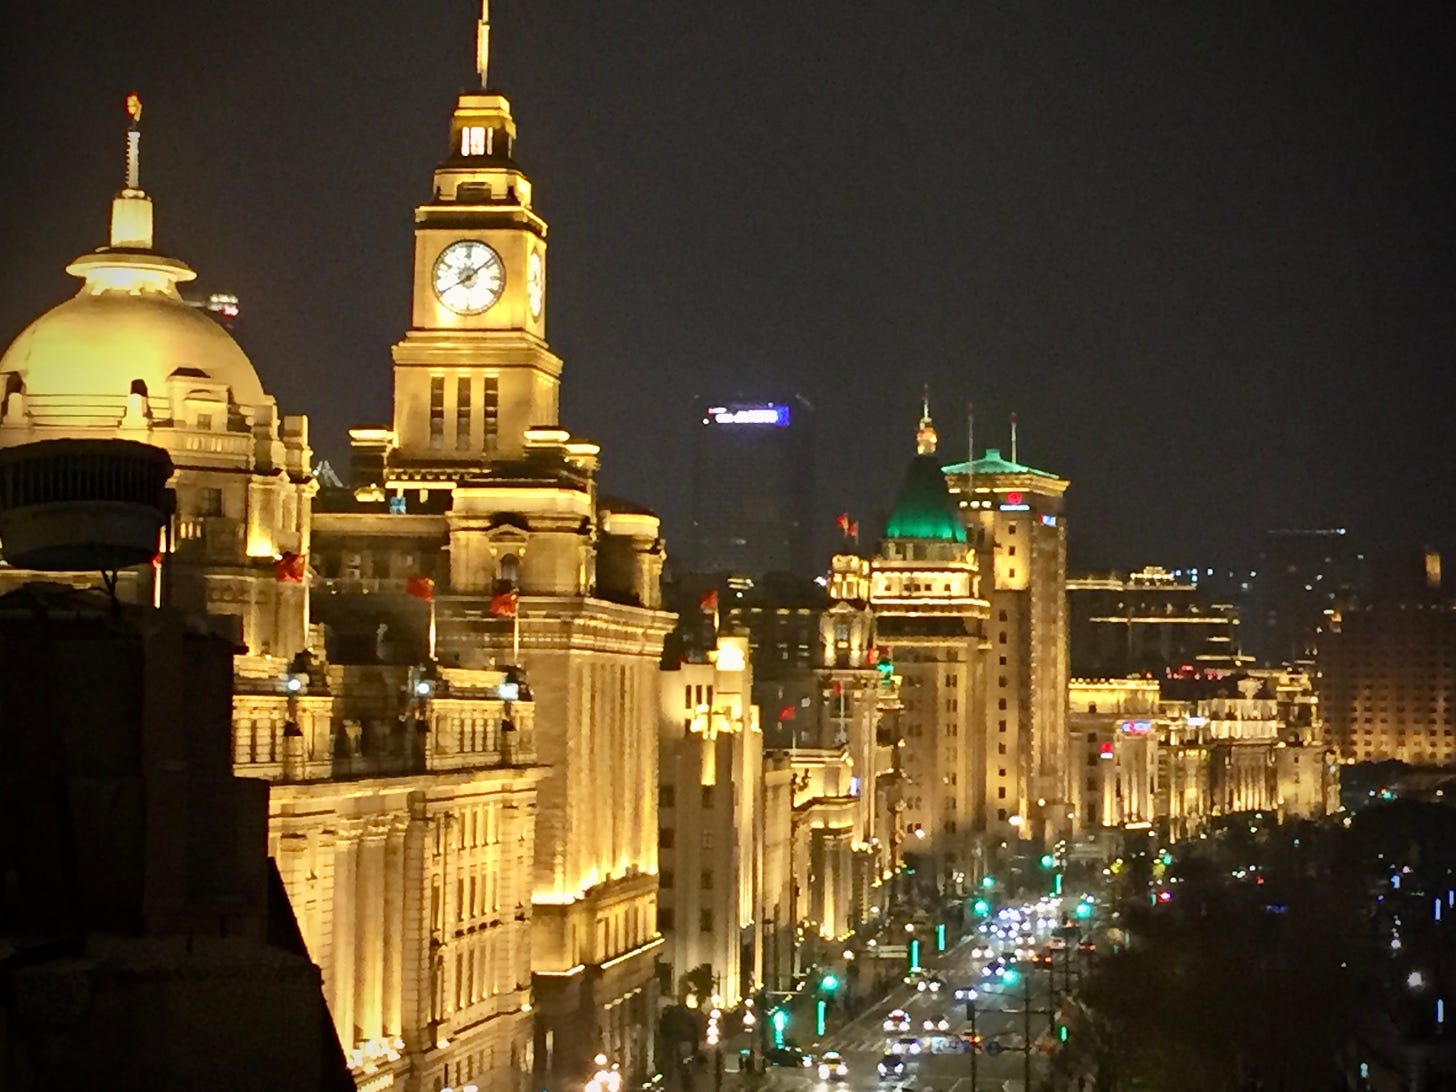 The Bund in Shanghai lit at night.